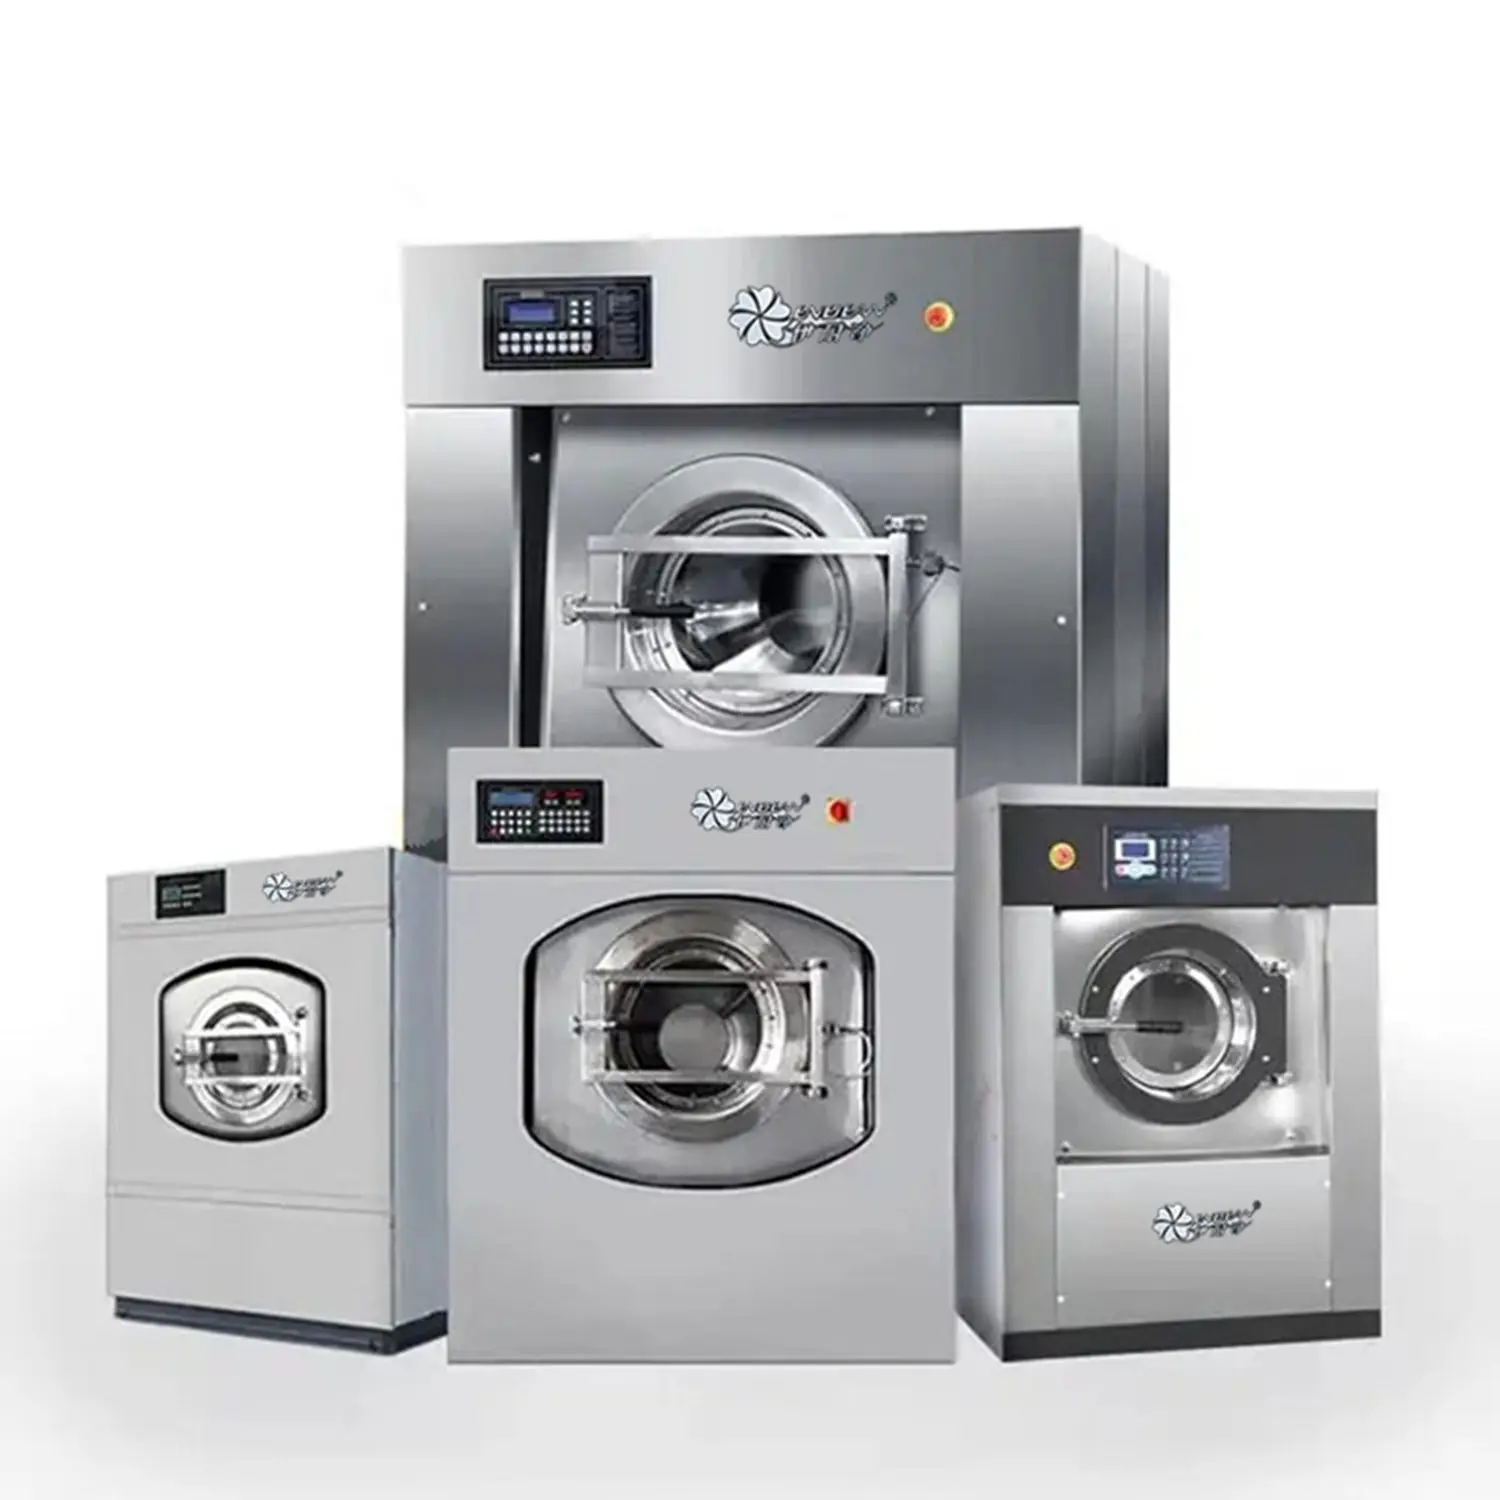 Alta qualidade do gás elétrico opcional completo automático industrial lavadora lavadora extrator